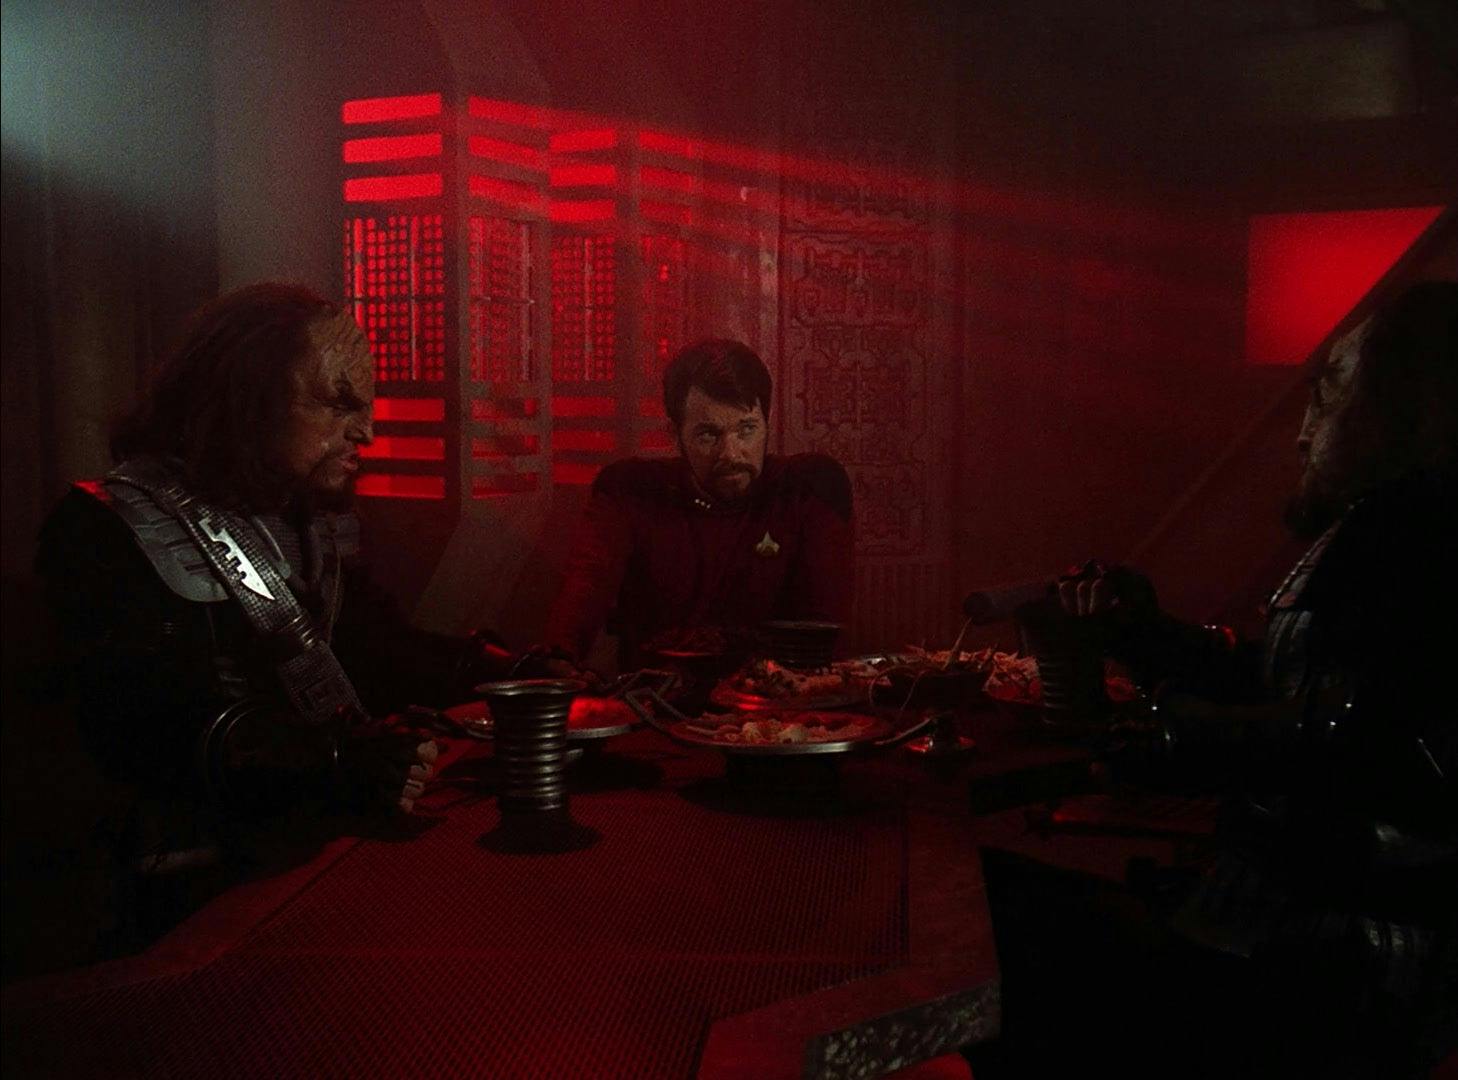 Riker joins the Klingon crew in an exchange program